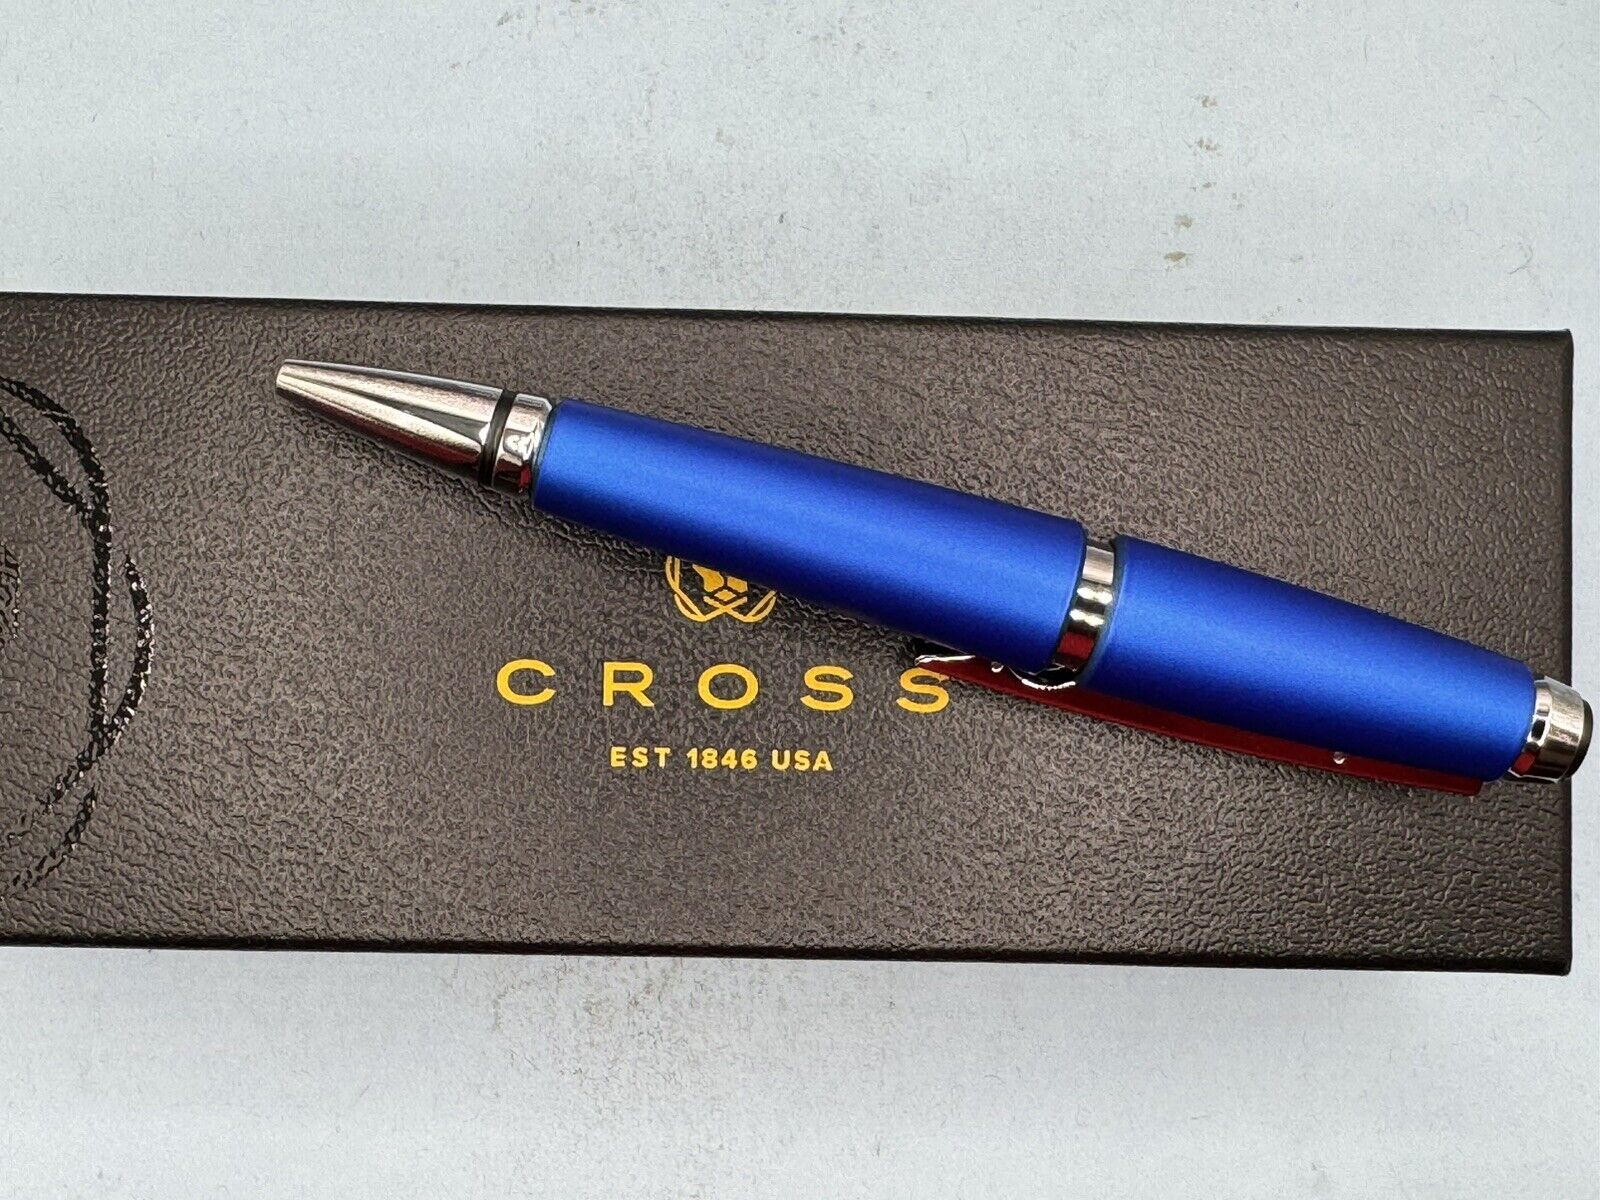 Cross Edge Rollerball Pen Nitro Blue AT0555-3 NEW Capless